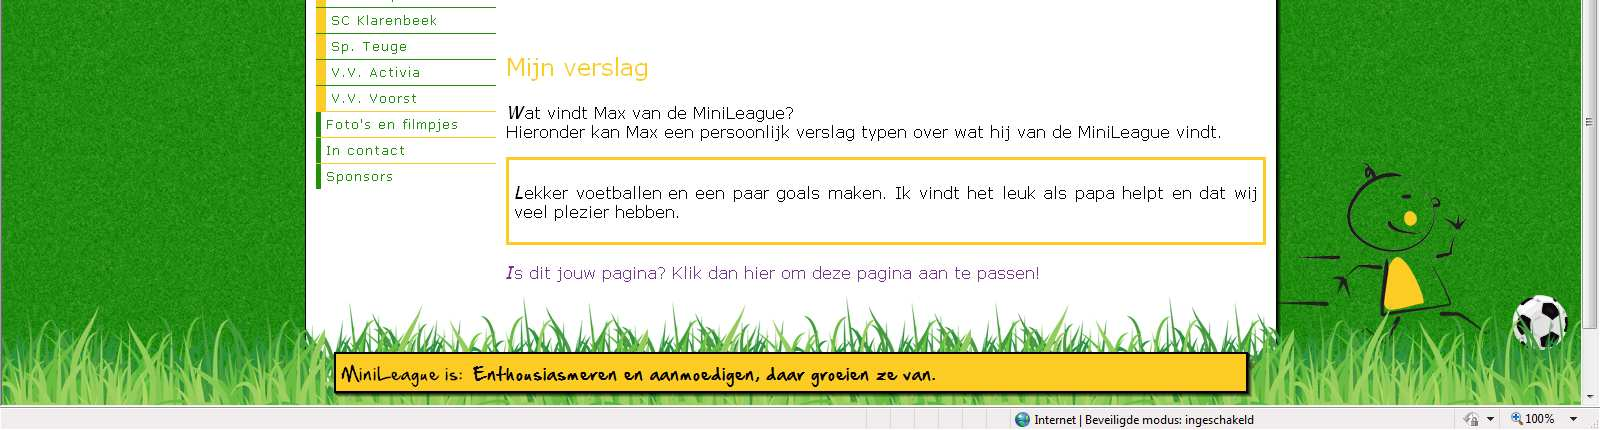 9. Website www.svtwello.nl en www.minileague.nl Informatie over de Minipupillen kunt u ook op de website van s.v. Twello vinden. Onder Teams is er een teampagina Minipupillen.